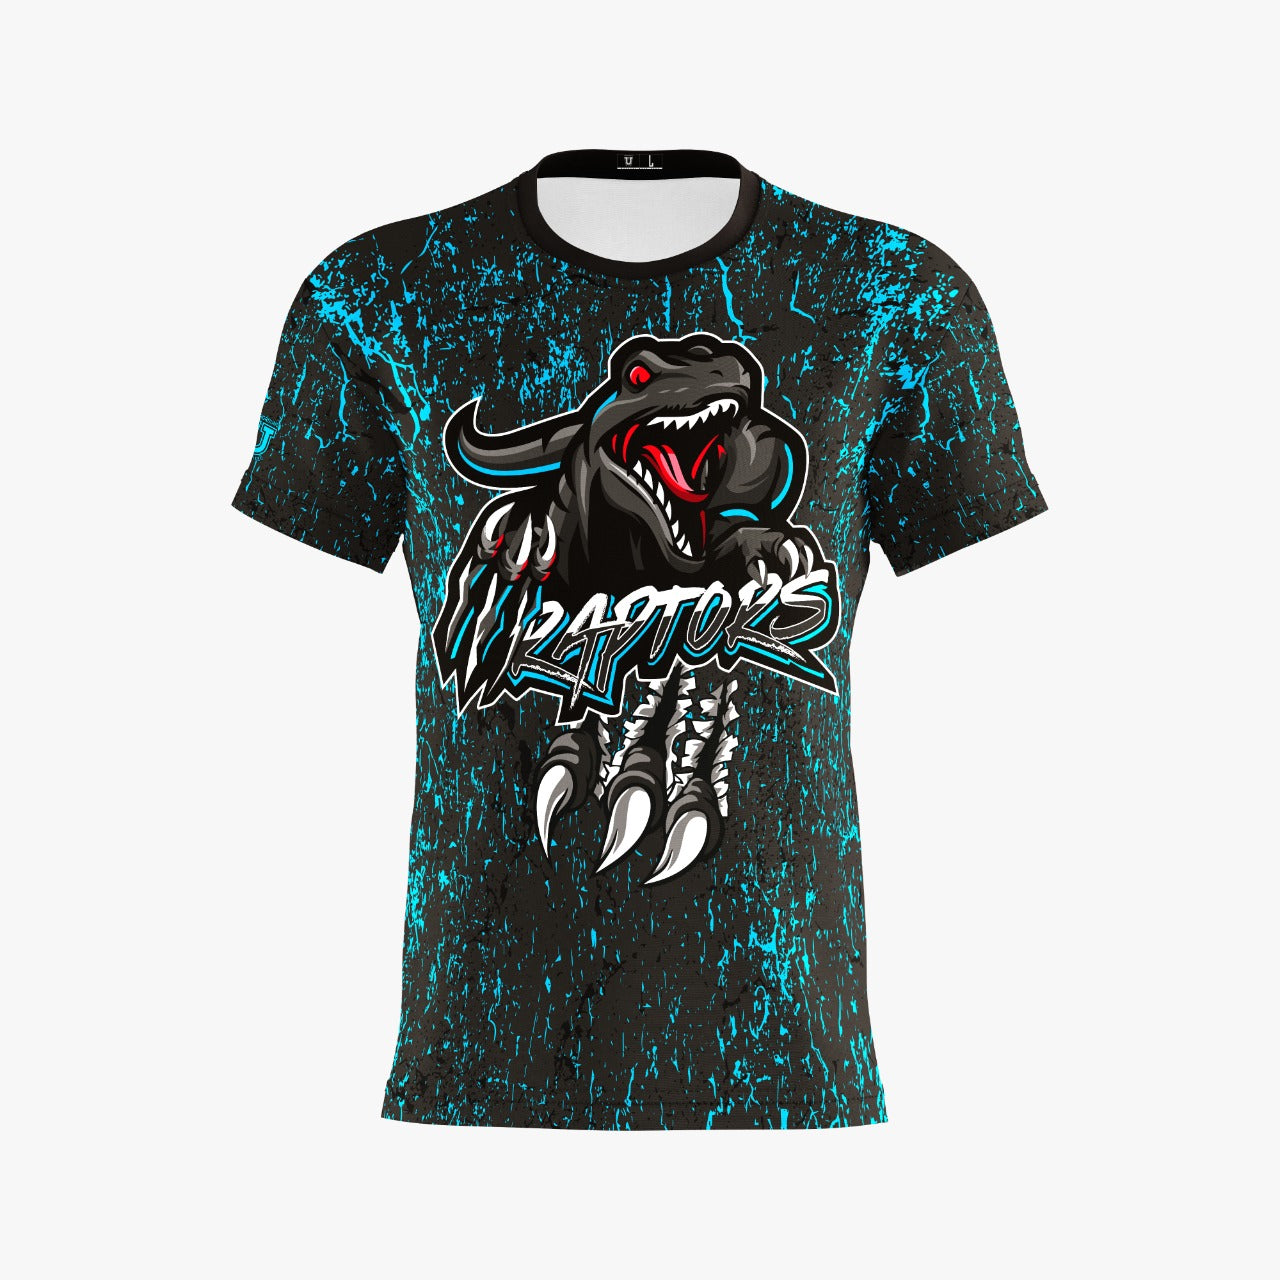 Raptors Dri Tech T-Shirt ~ Digital Blue Splatter